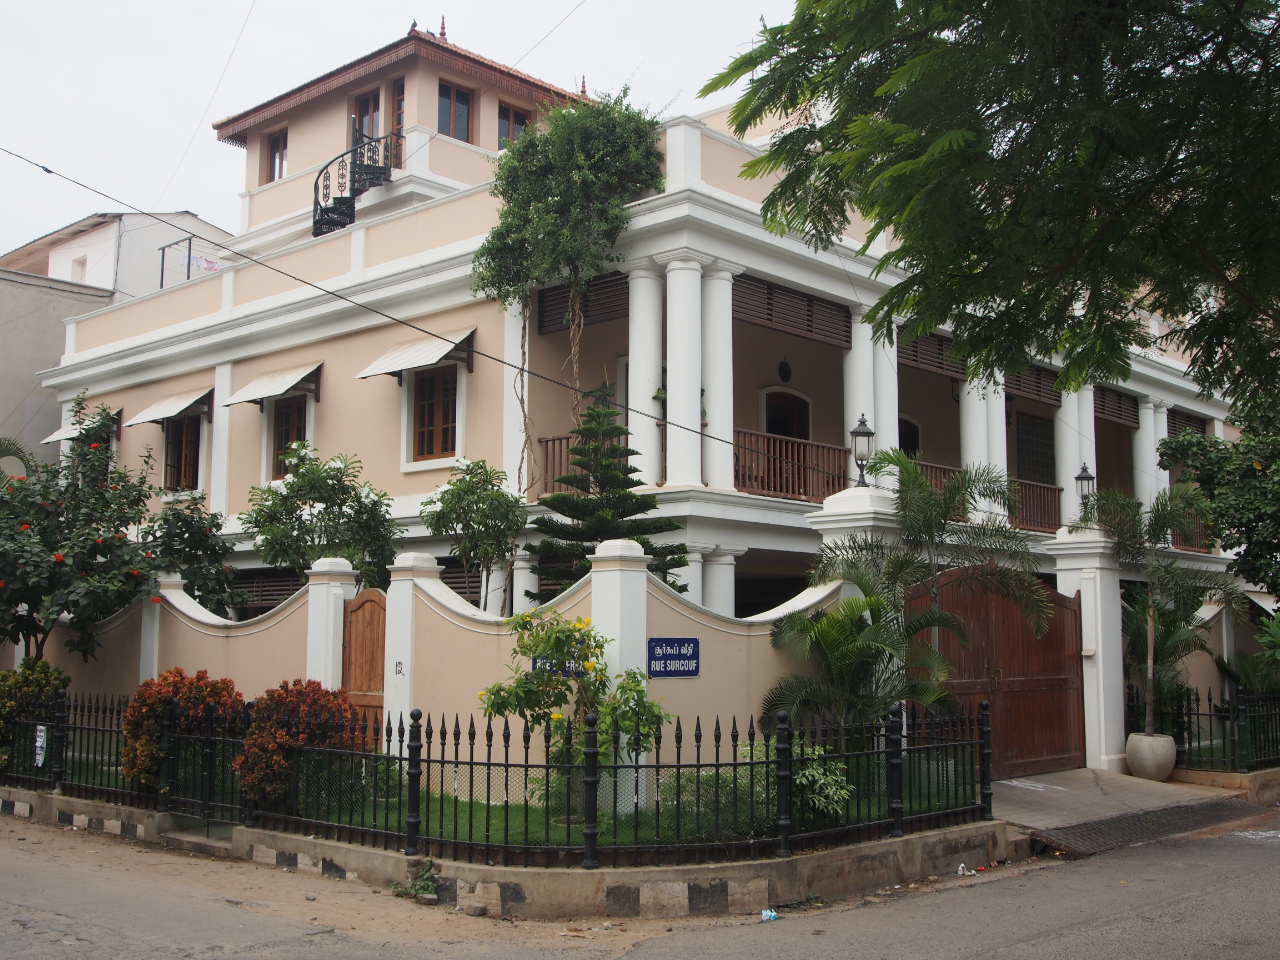 Maison française à Pondichery